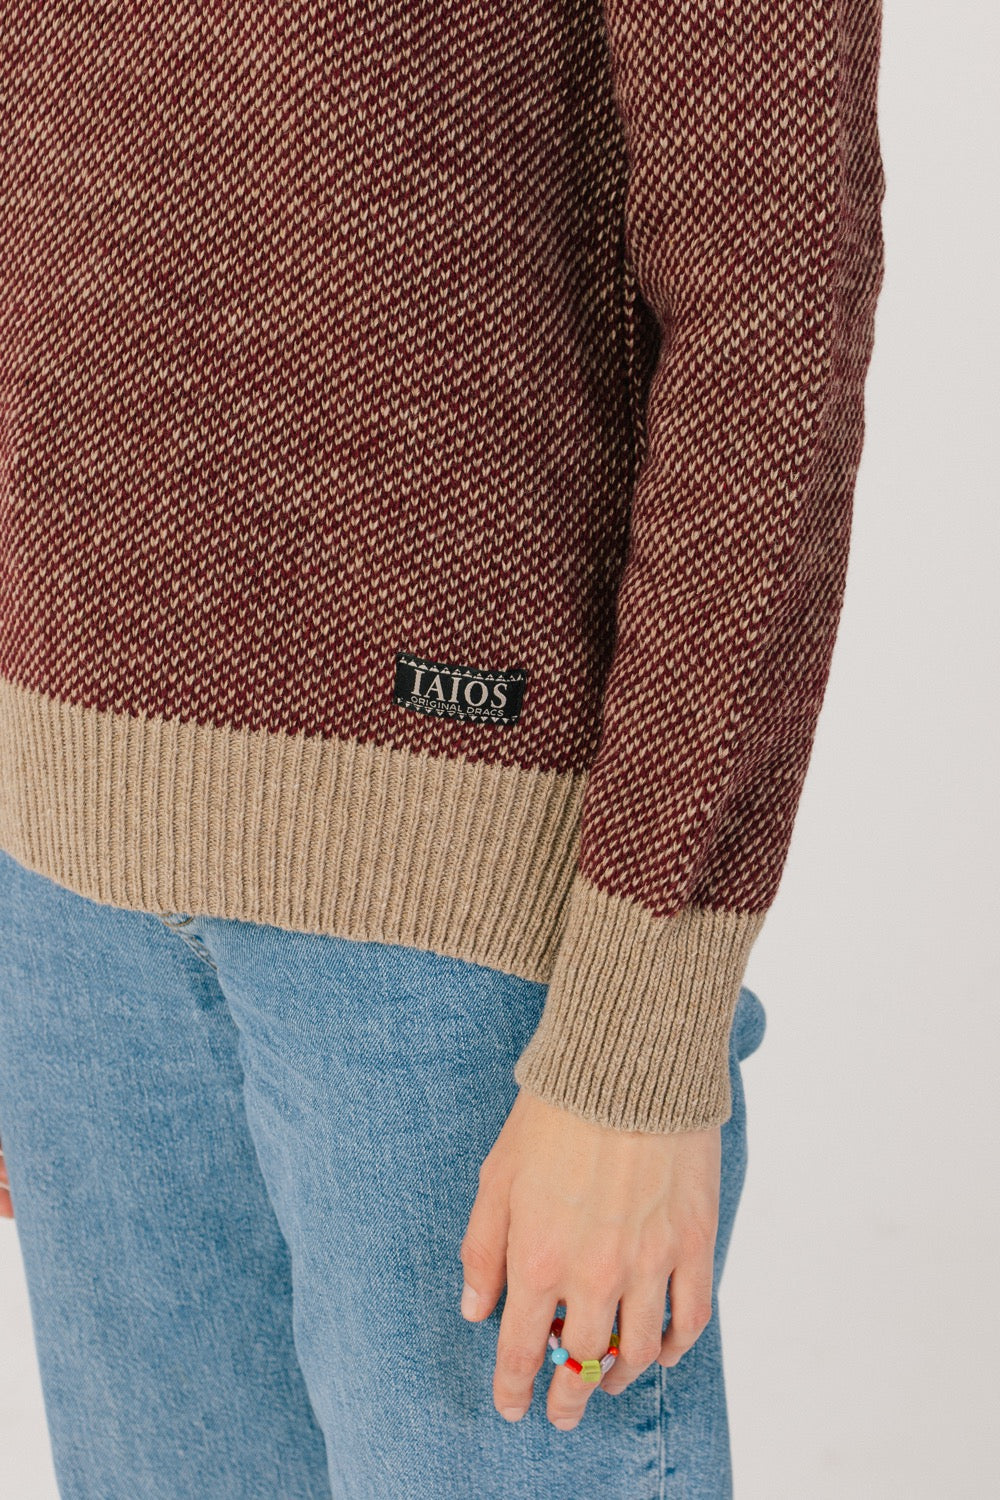 Detall del baix del jersei on veiem l'etiqueta de iaios